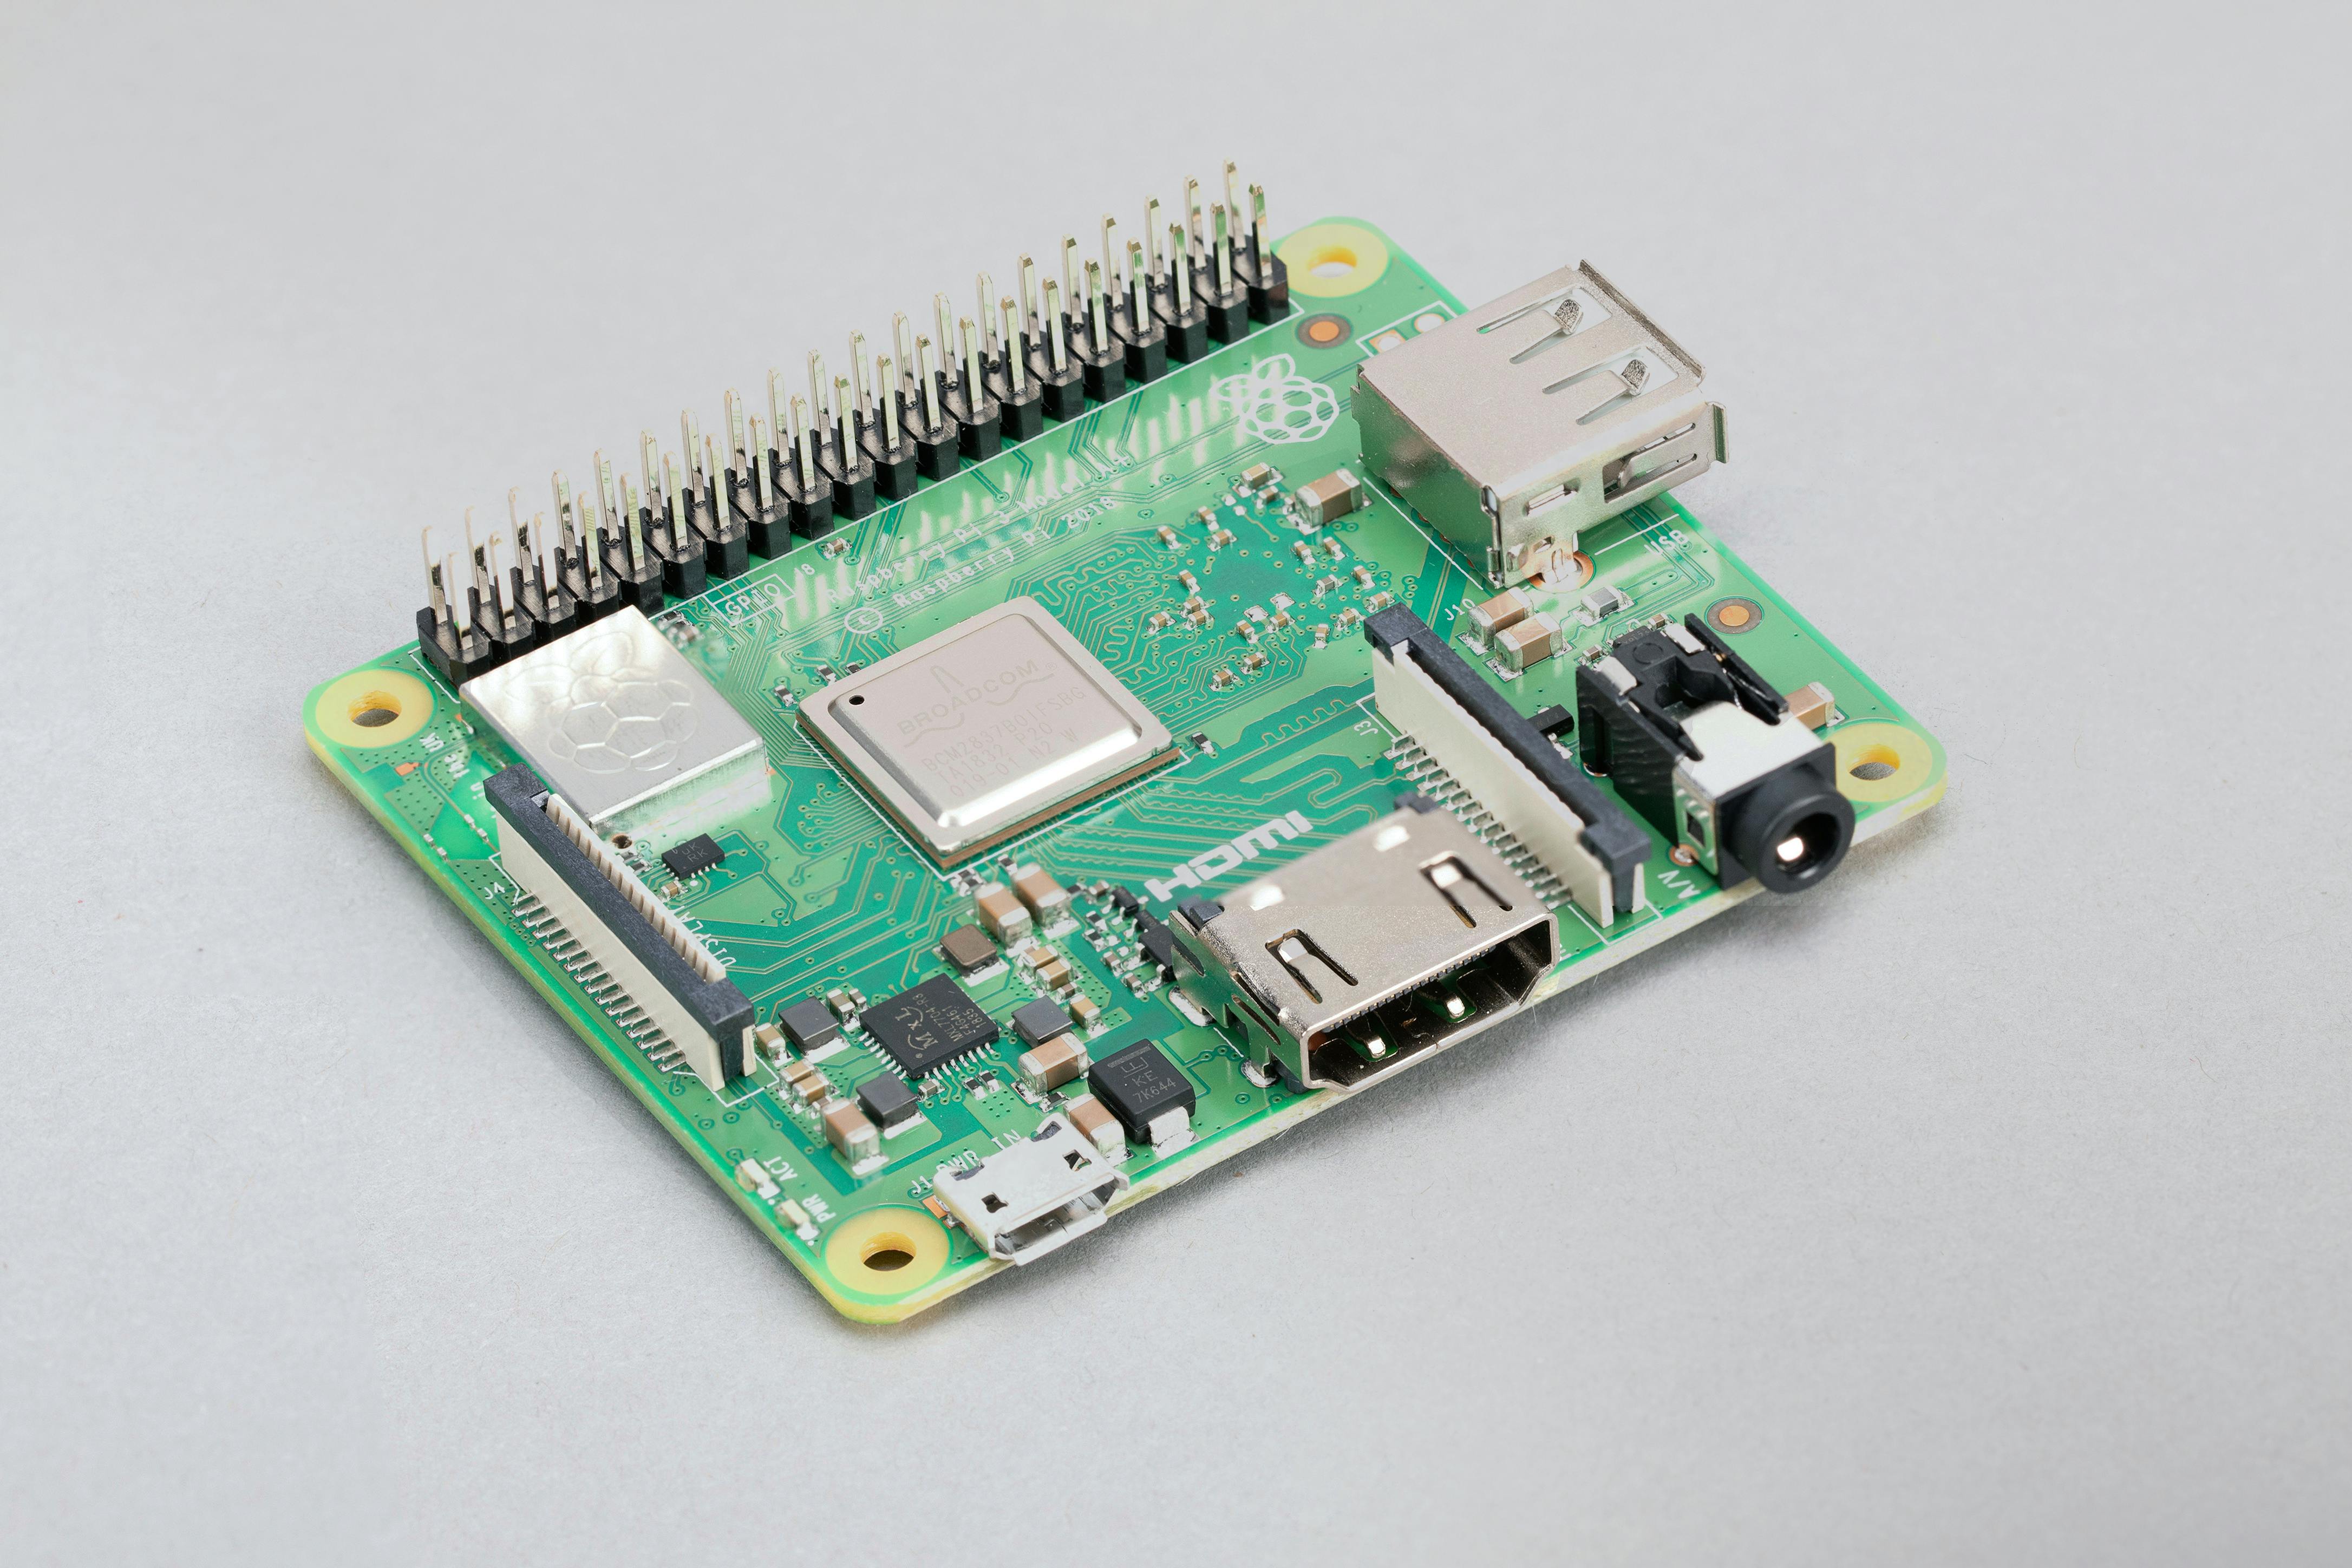 Buy a Raspberry Pi 3 Model A+ – Raspberry Pi